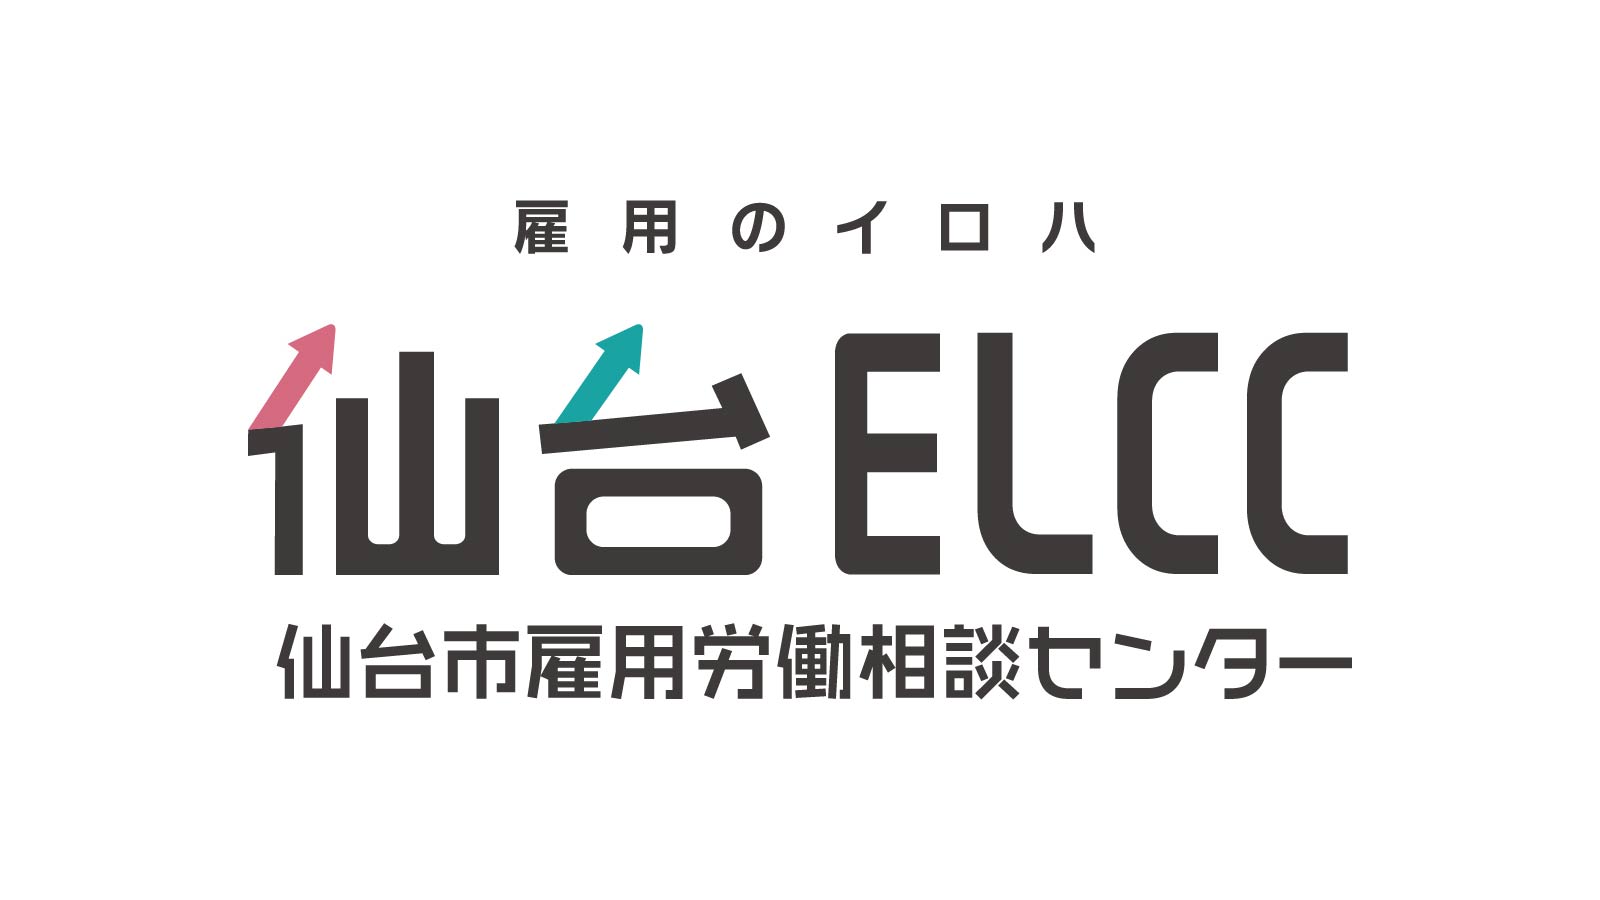 仙台ELCC・仙台商工会議所 共催セミナー 「労働契約法の無期転換ルール」